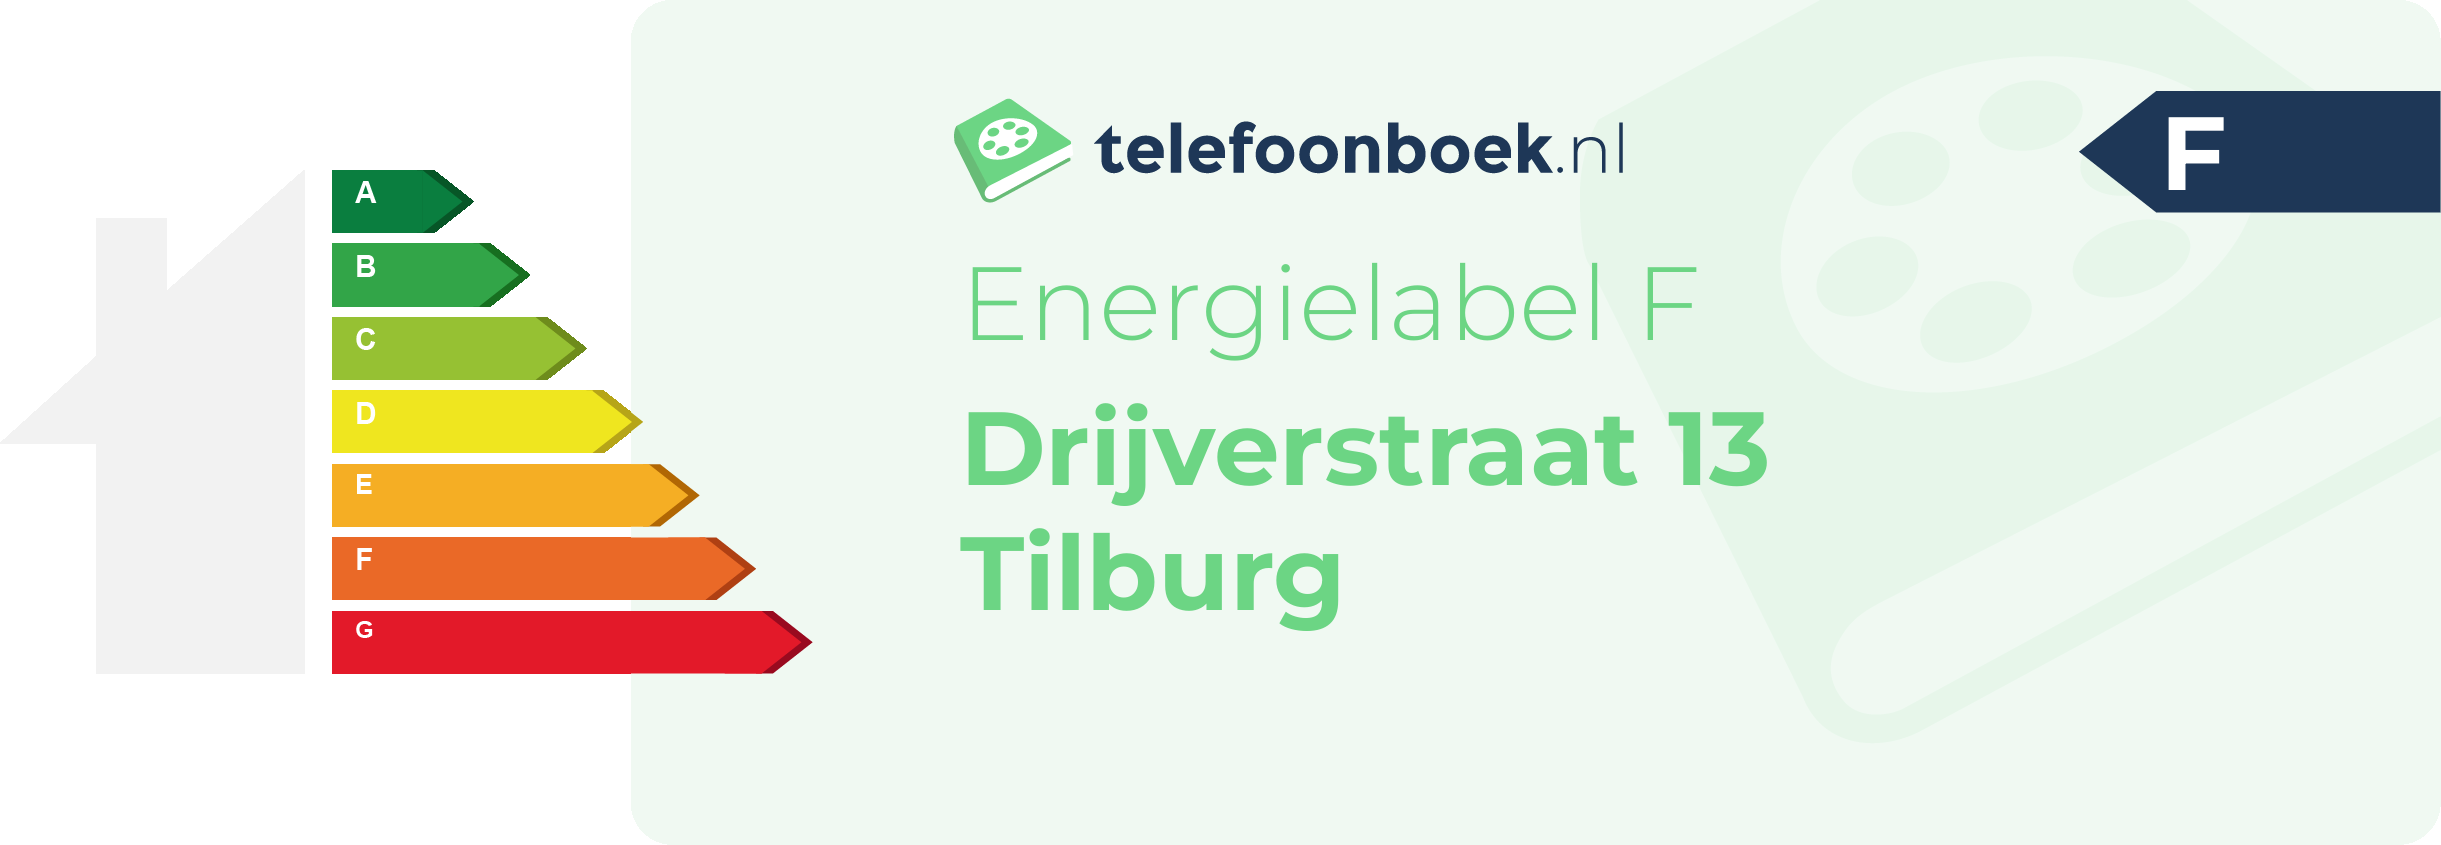 Energielabel Drijverstraat 13 Tilburg